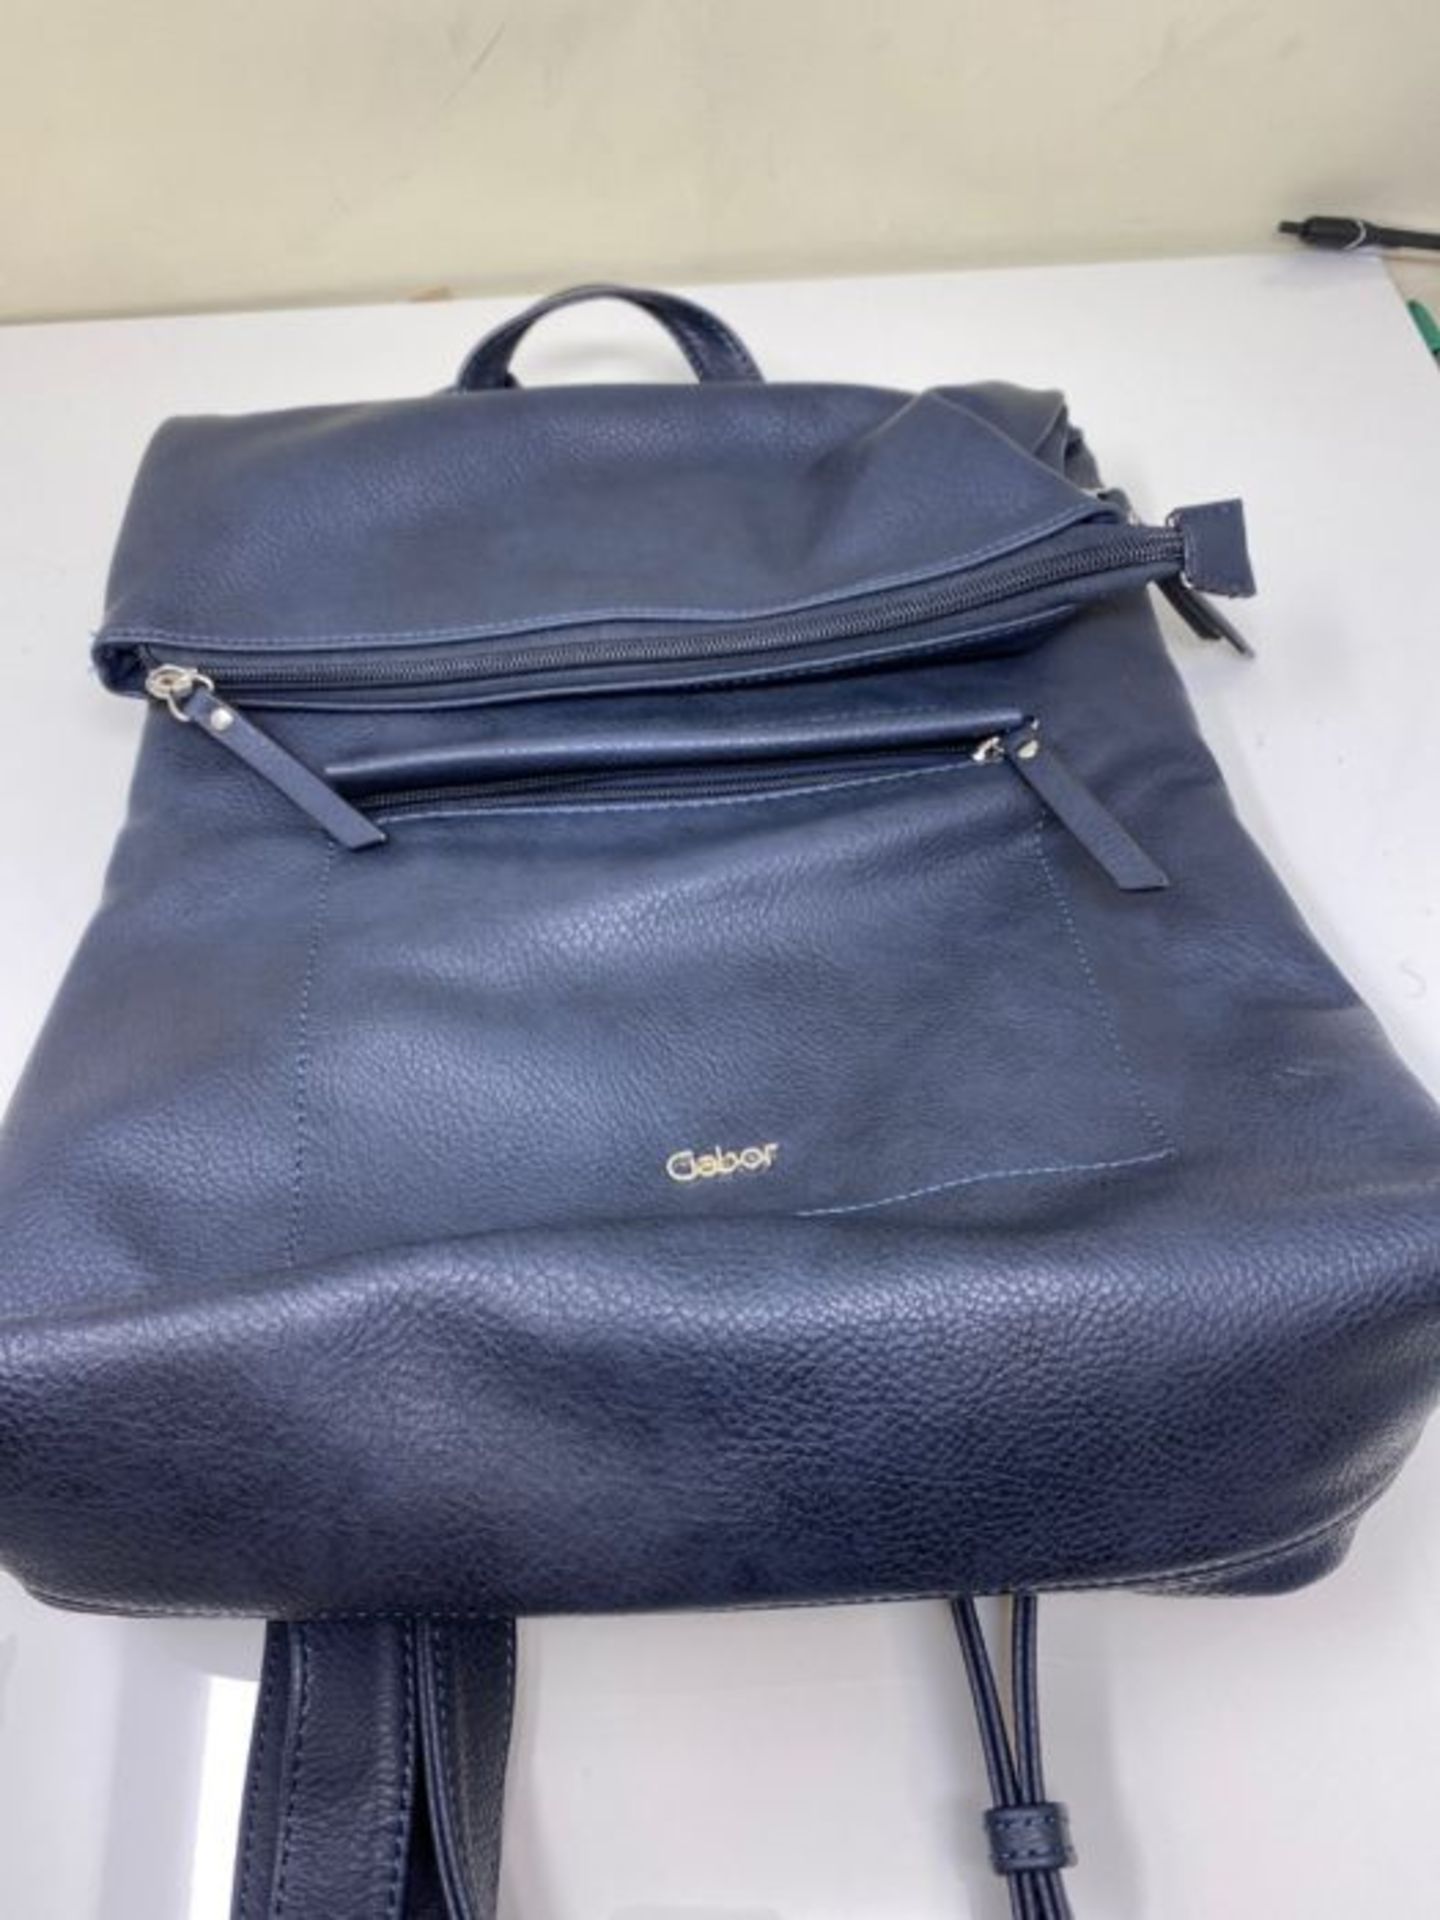 Gabor Mina Backpack Handbag Blue Size: One Size - Image 2 of 2